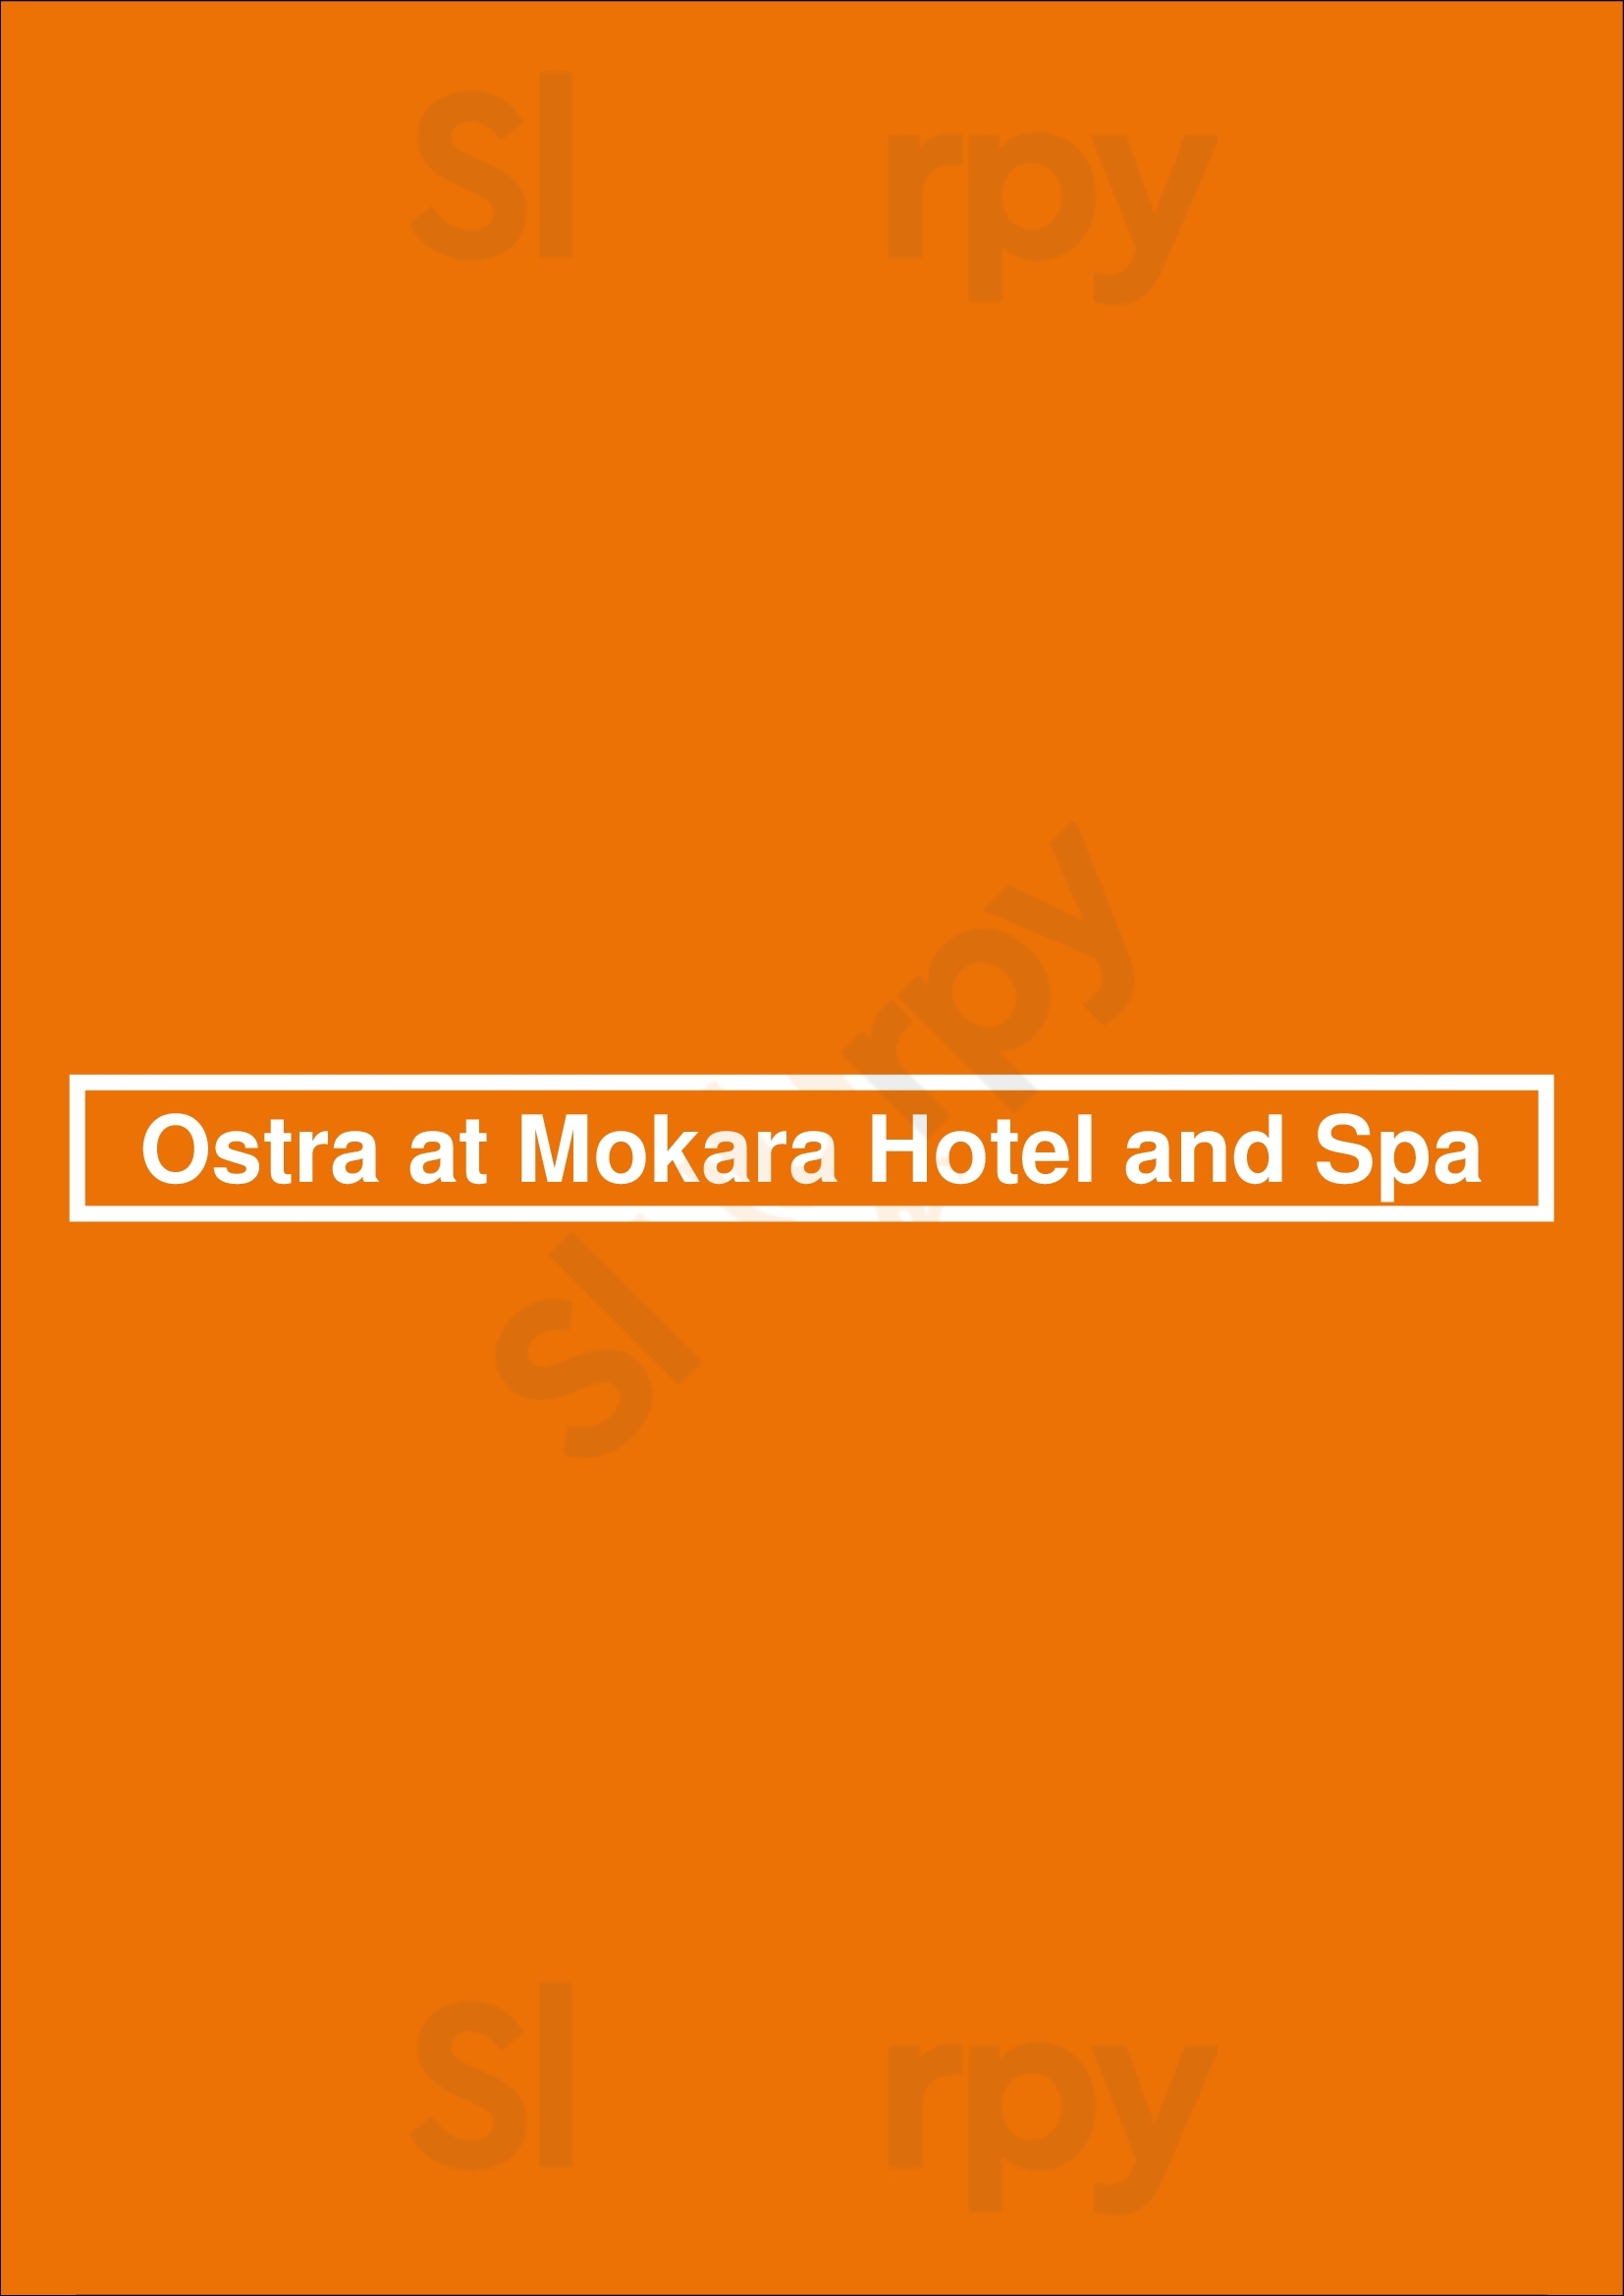 Ostra At Mokara Hotel And Spa San Antonio Menu - 1